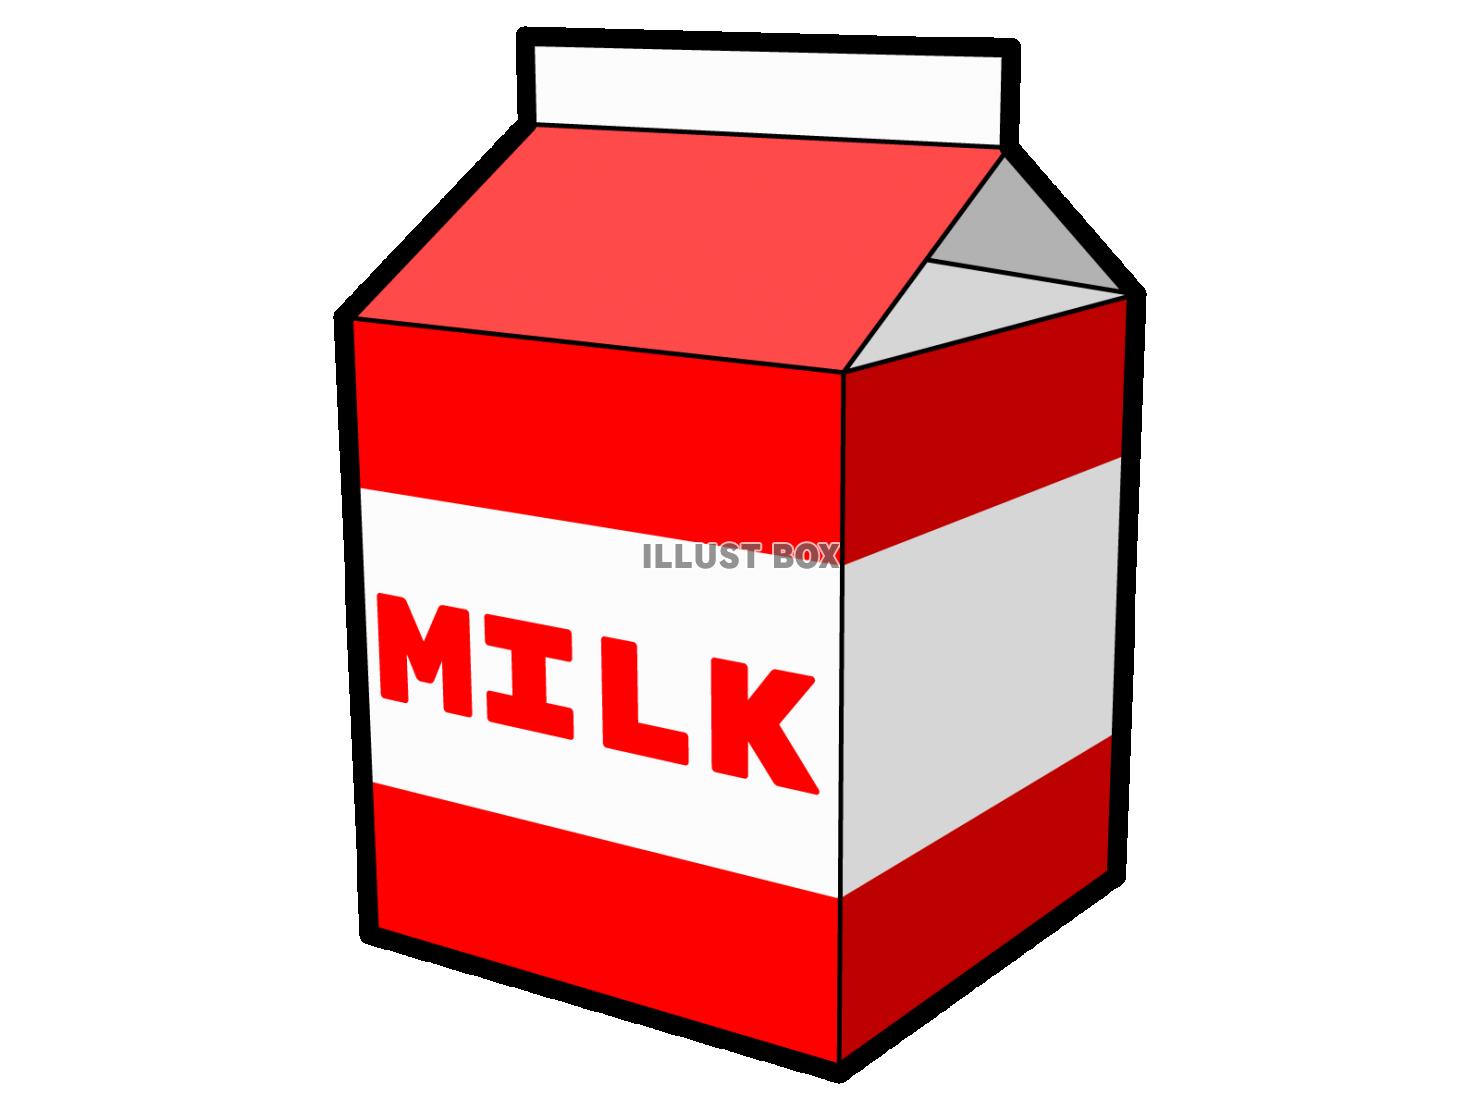 牛乳パックのシンプルなイラスト【透過PNG】